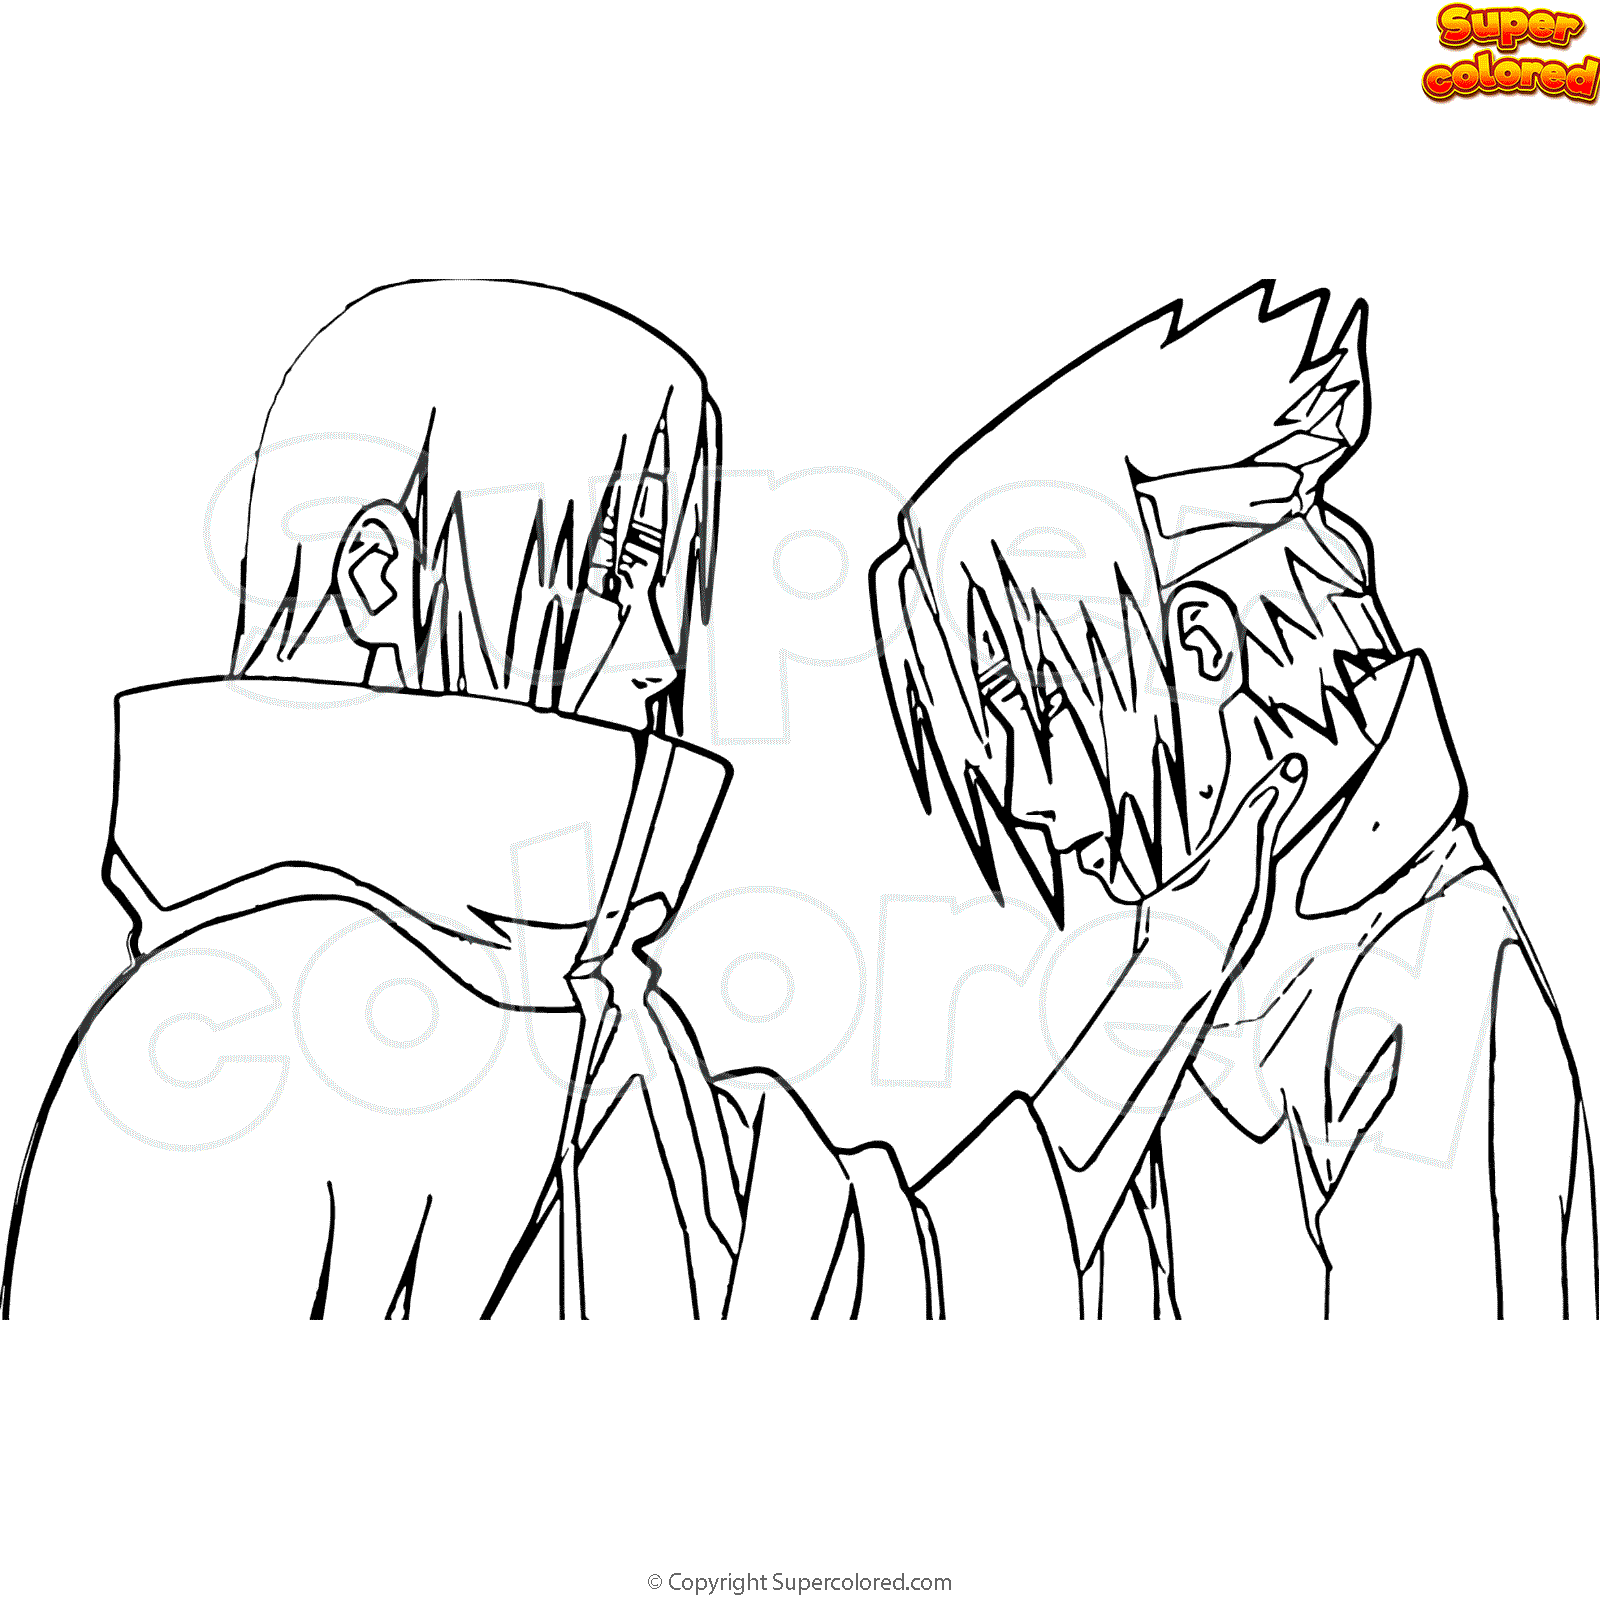 Sasuke & Itachi SomeoneFarAway - Illustrations ART street